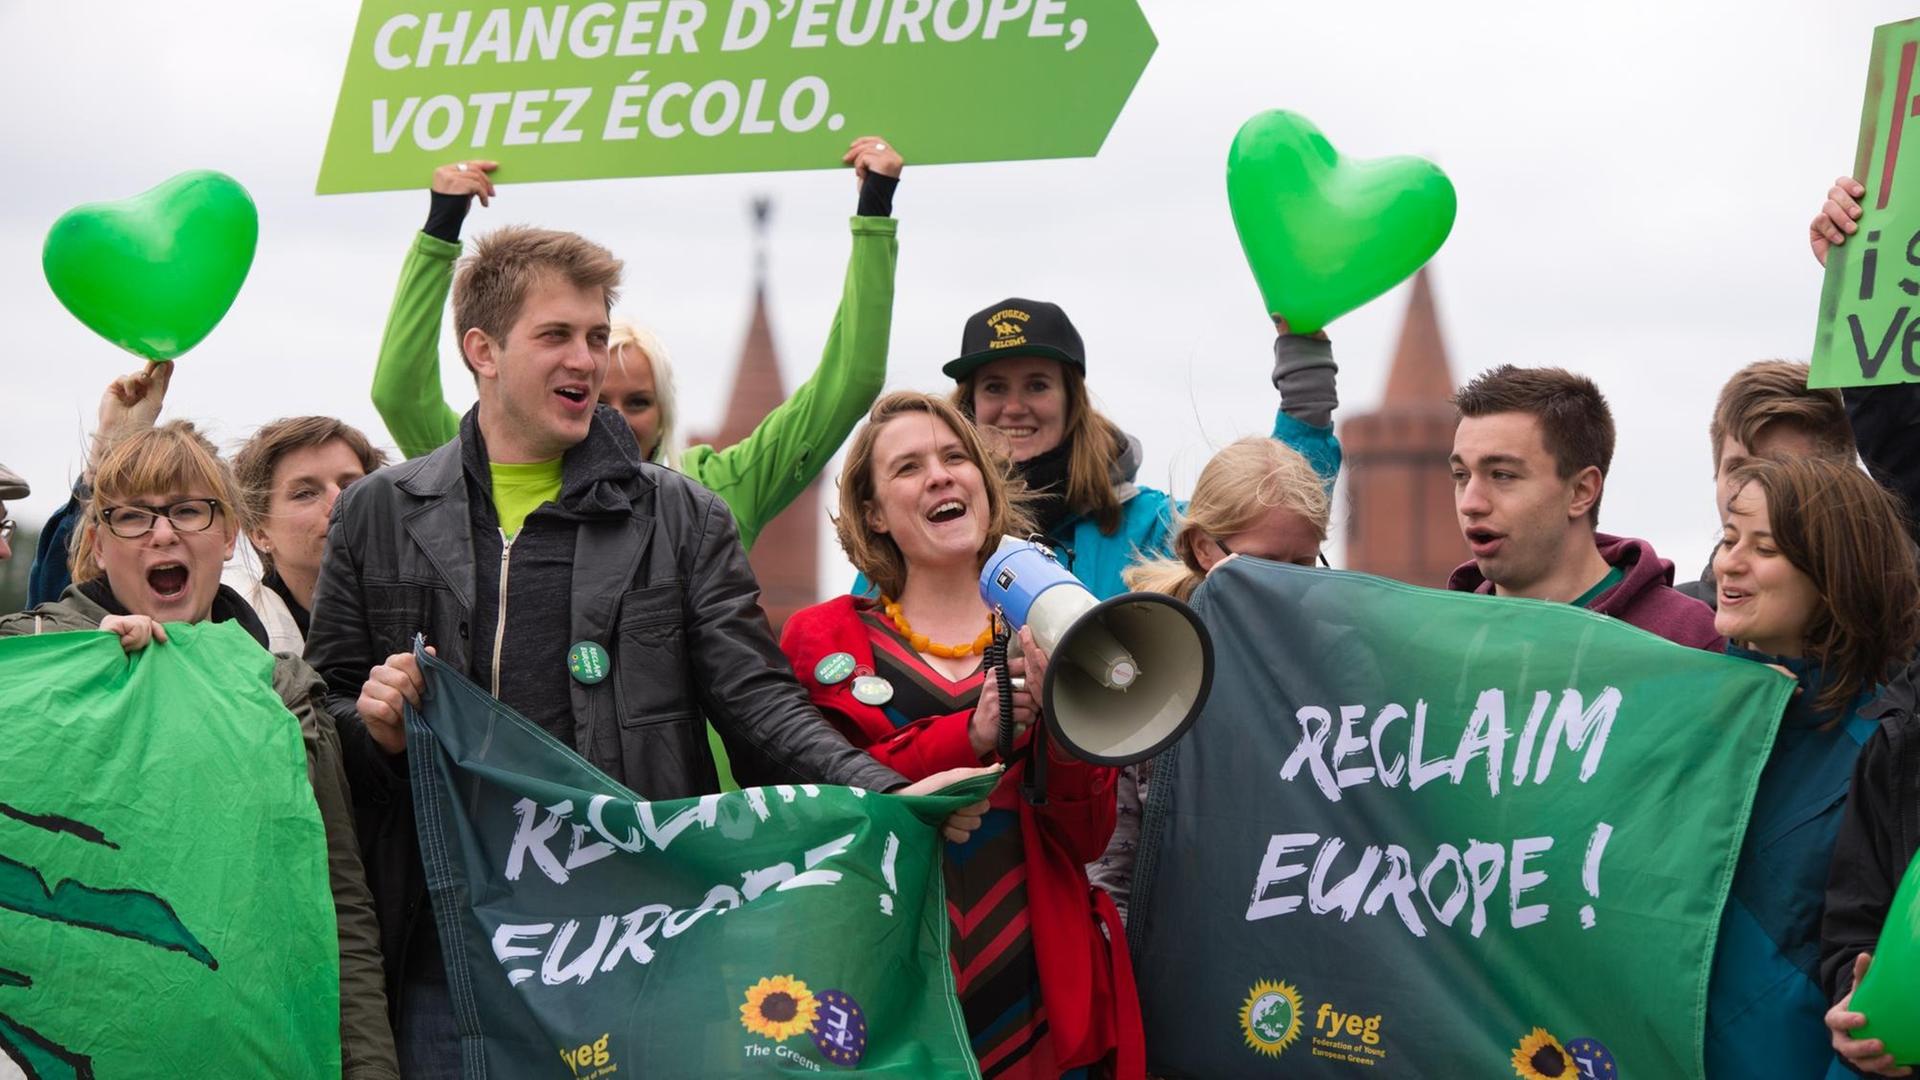 Mit Megafon und grünen Herzluftballons: Terry Reintke (M.) zeigt mit Parteikolleg*innen Flagge beim Europa-Wahlkampf der Grünen im Mai 2014